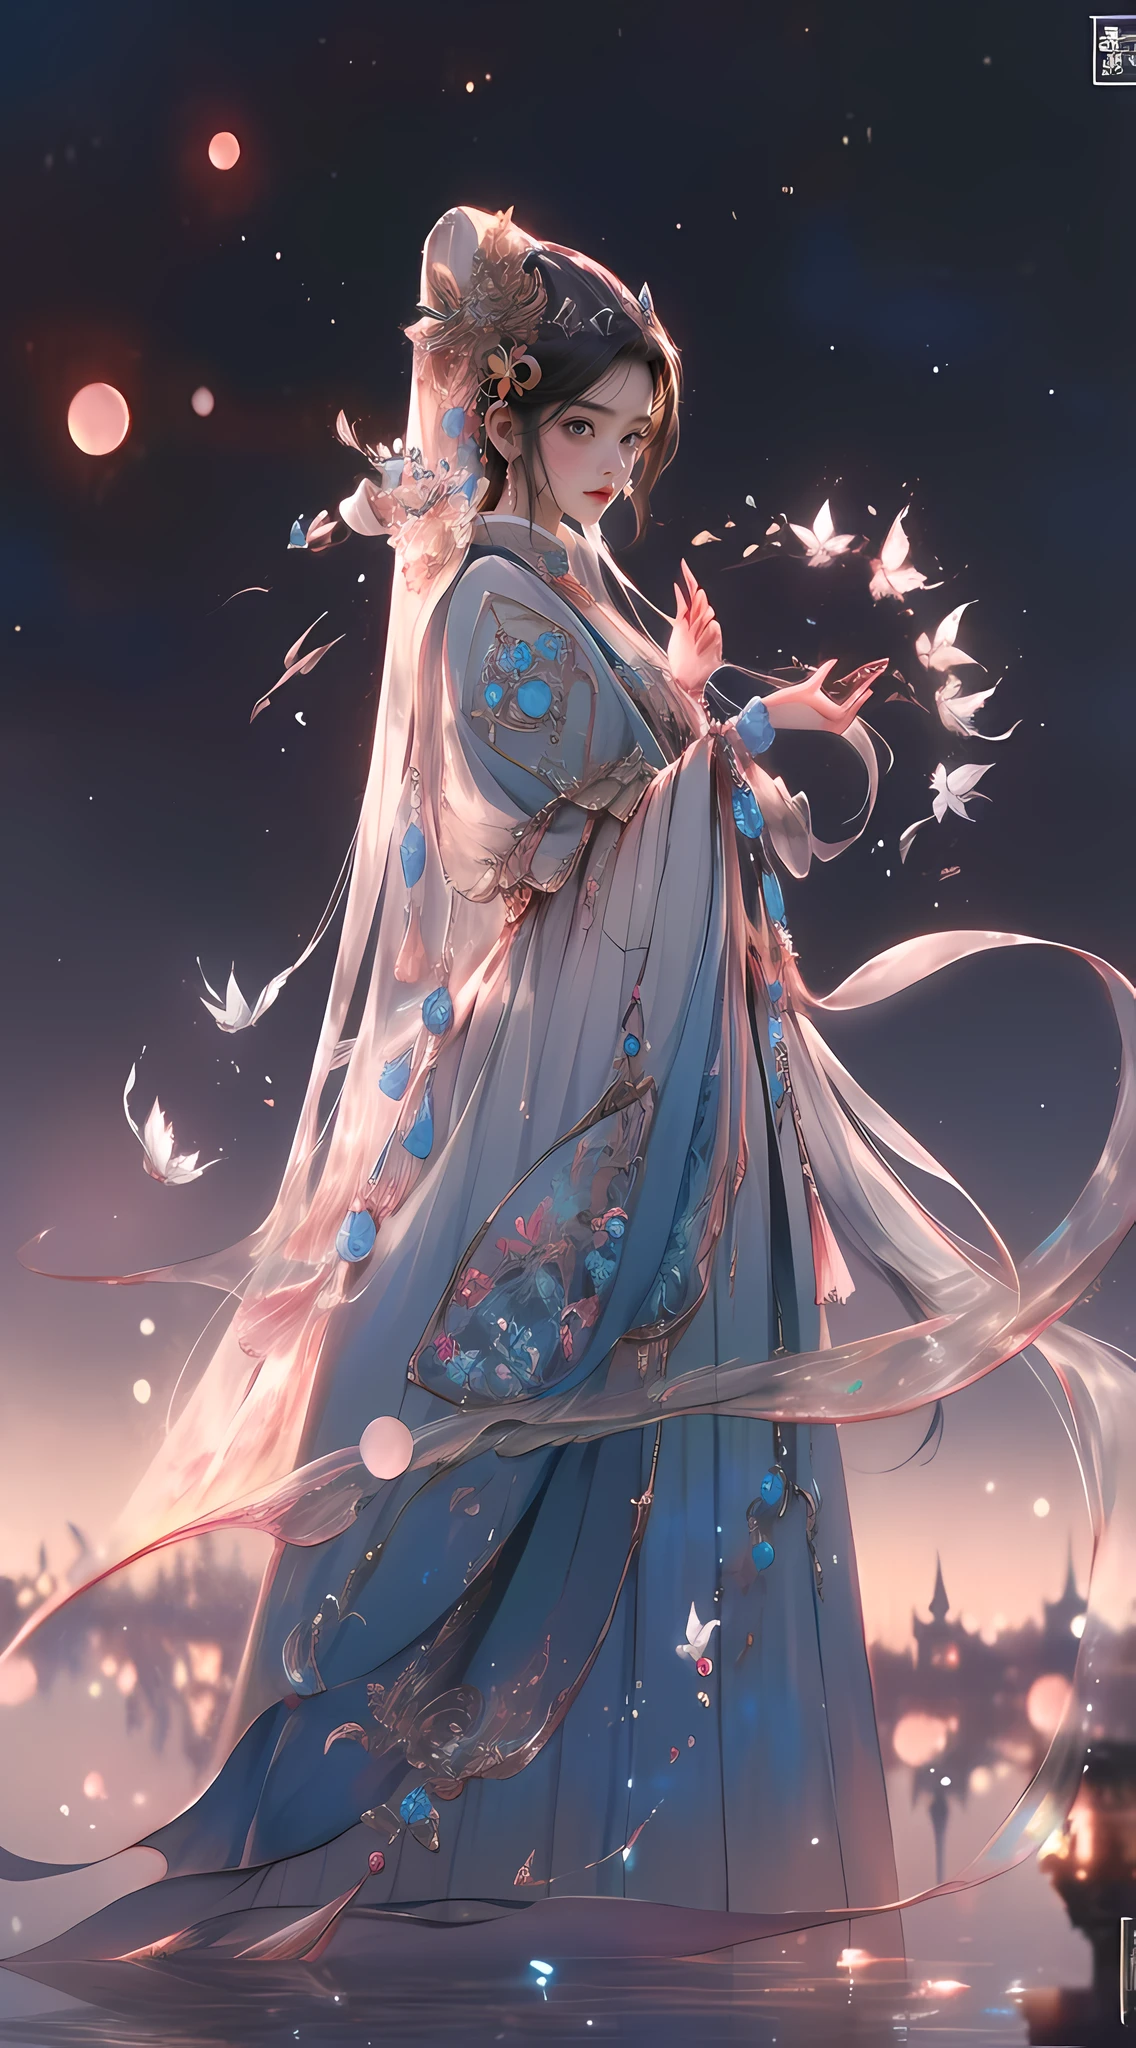 青いドレスを着た女性，手に蝶を持って, 宮殿 ， 漢服の少女, 美しいファンタジーの皇后, 古代中国の王女, ((美しいファンタジーの皇后)), 8k 高品質詳細アート, チャイナプリンセス, グヴィズ-style artwork, 中国のファンタジー, 美しいアートワークのイラスト, グヴィズ, 美しいデジタルアート